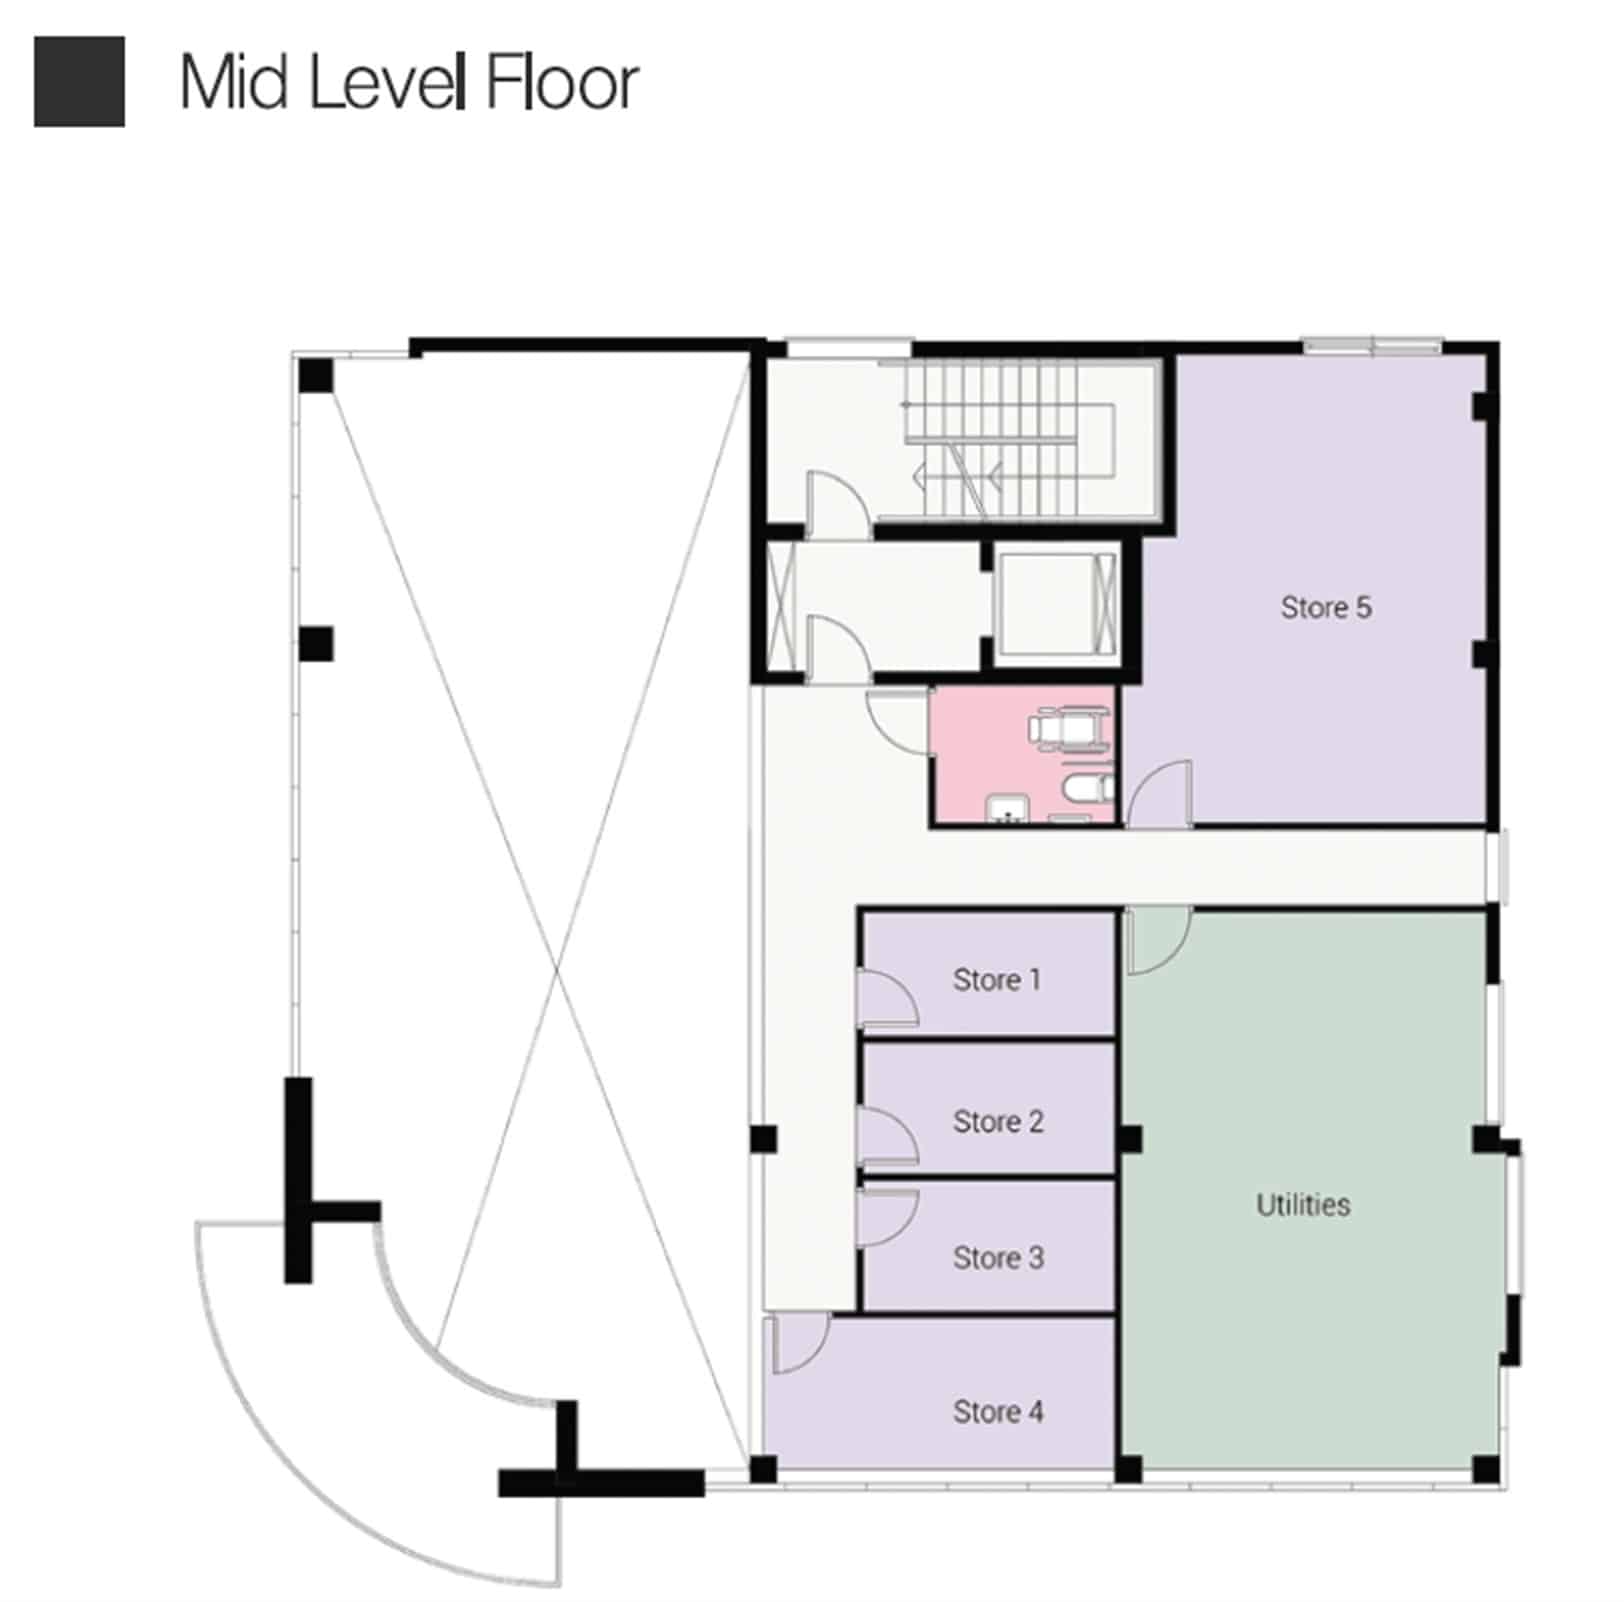 Mid Level Floor